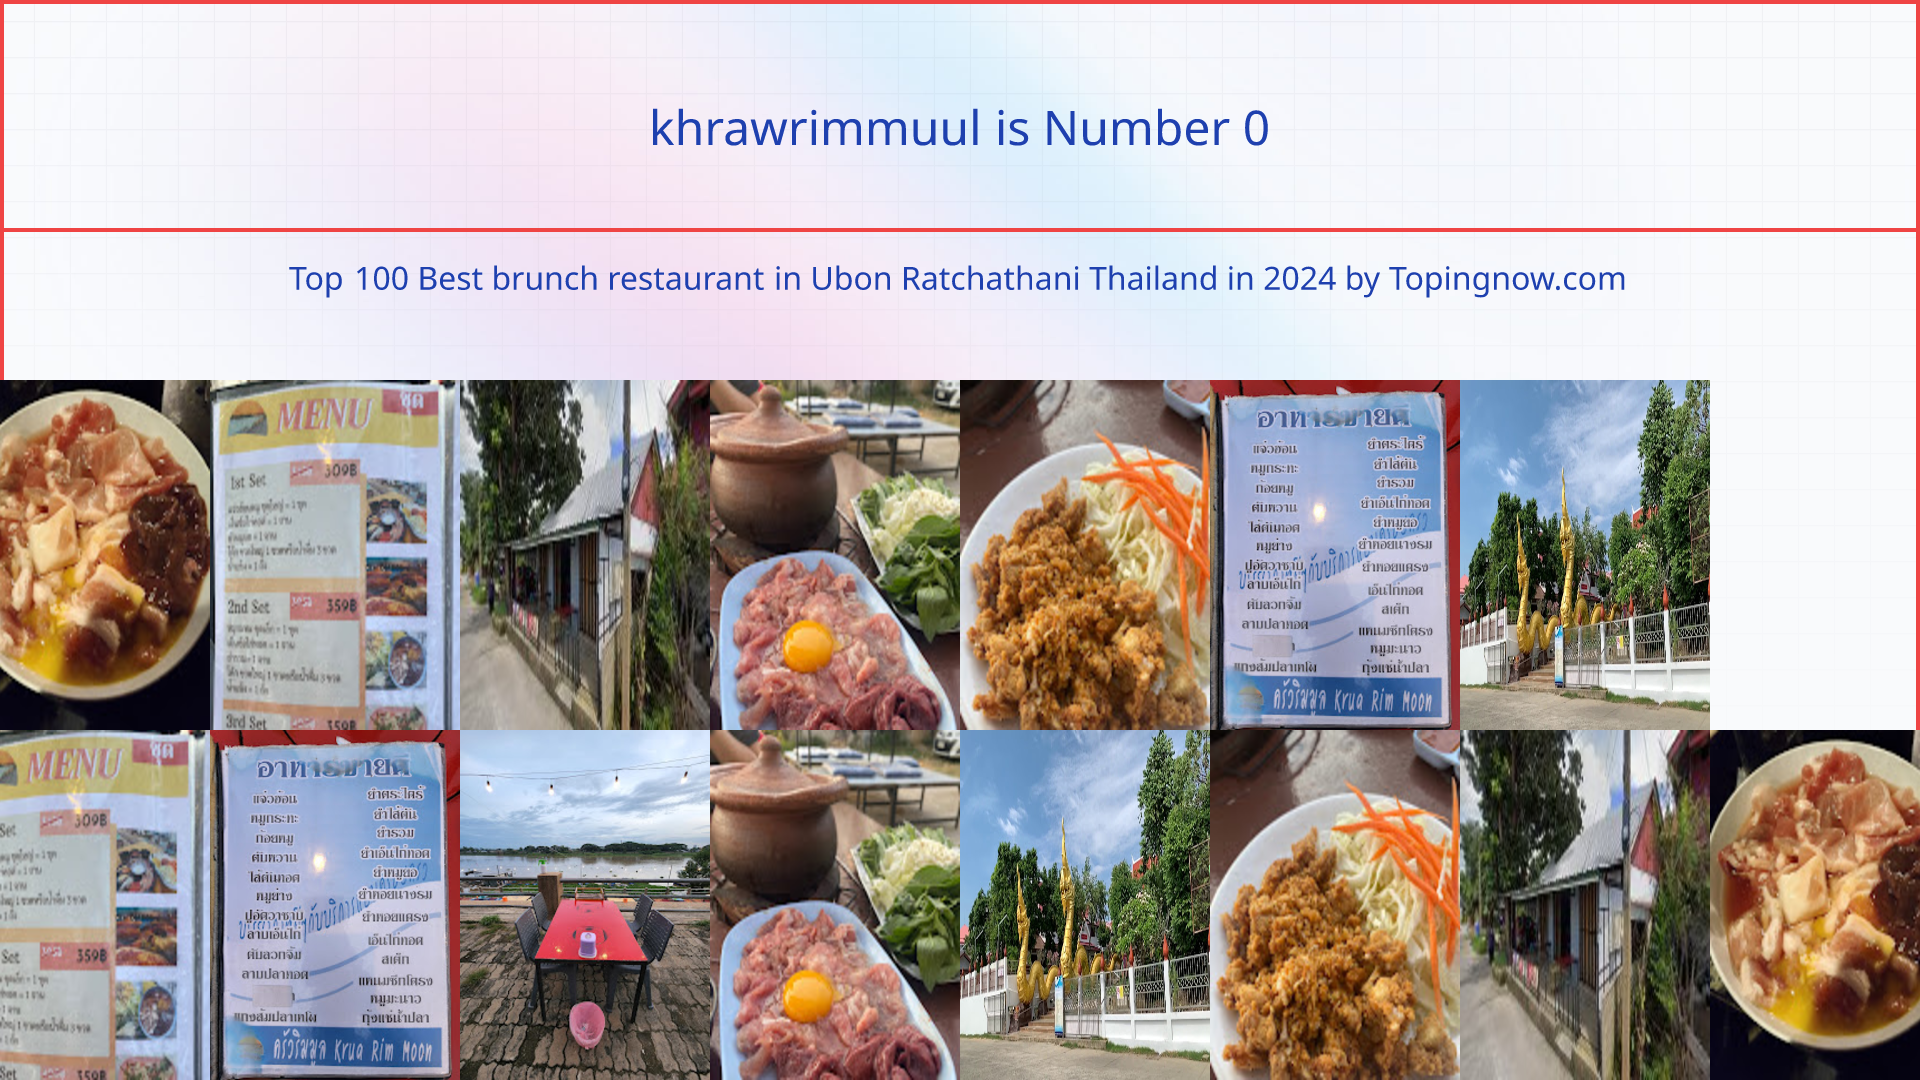 khrawrimmuul: Top 100 Best brunch restaurant in Ubon Ratchathani Thailand in 2024